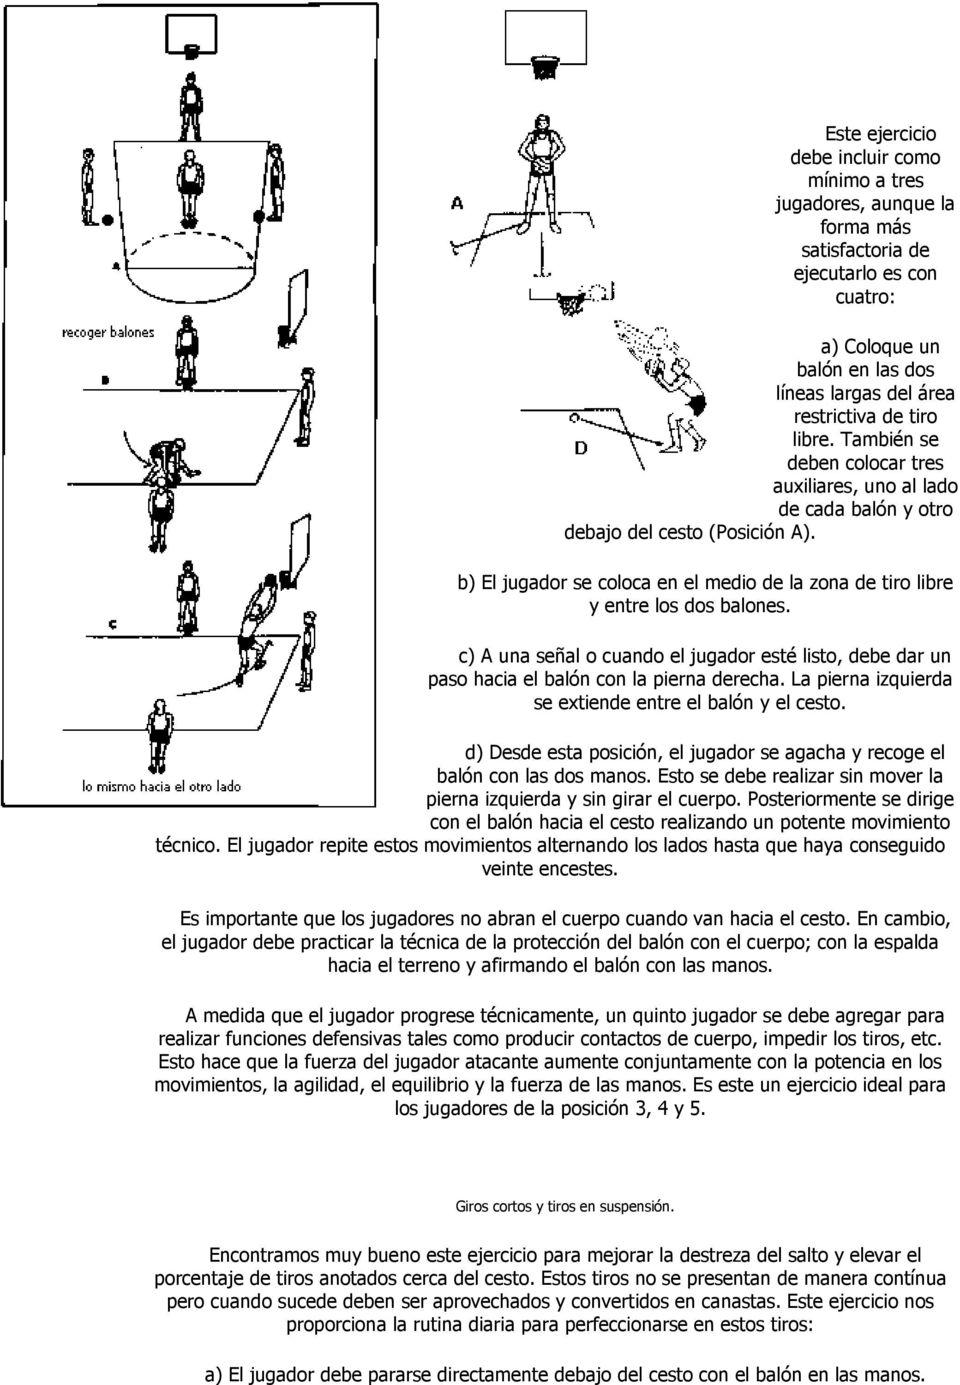 c) A una señal o cuando el jugador esté listo, debe dar un paso hacia el balón con la pierna derecha. La pierna izquierda se extiende entre el balón y el cesto.